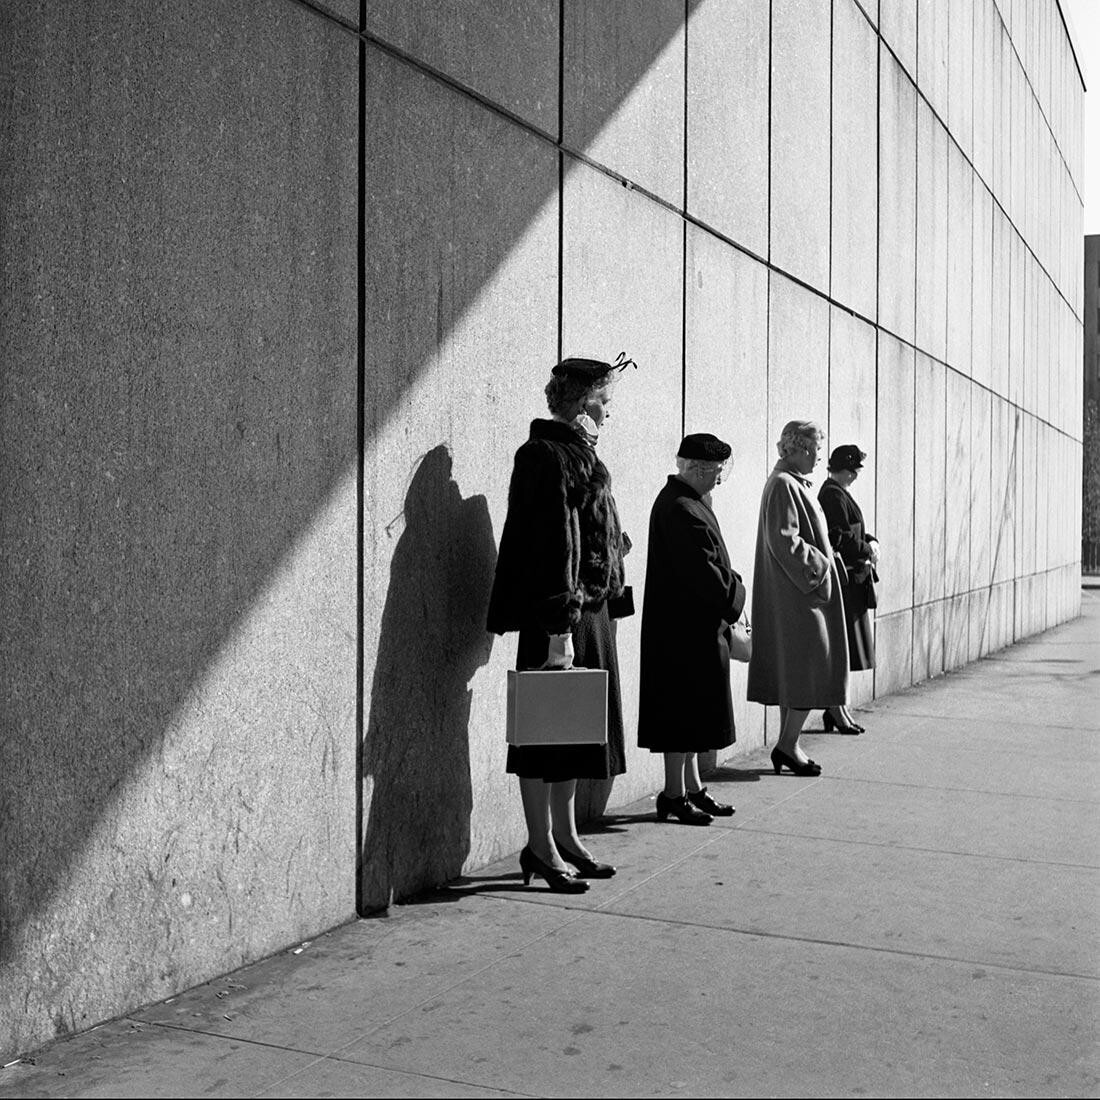 31 октября 1954 г., Нью-Йорк, штат Нью-Йорк. Фотограф Вивиан Майер